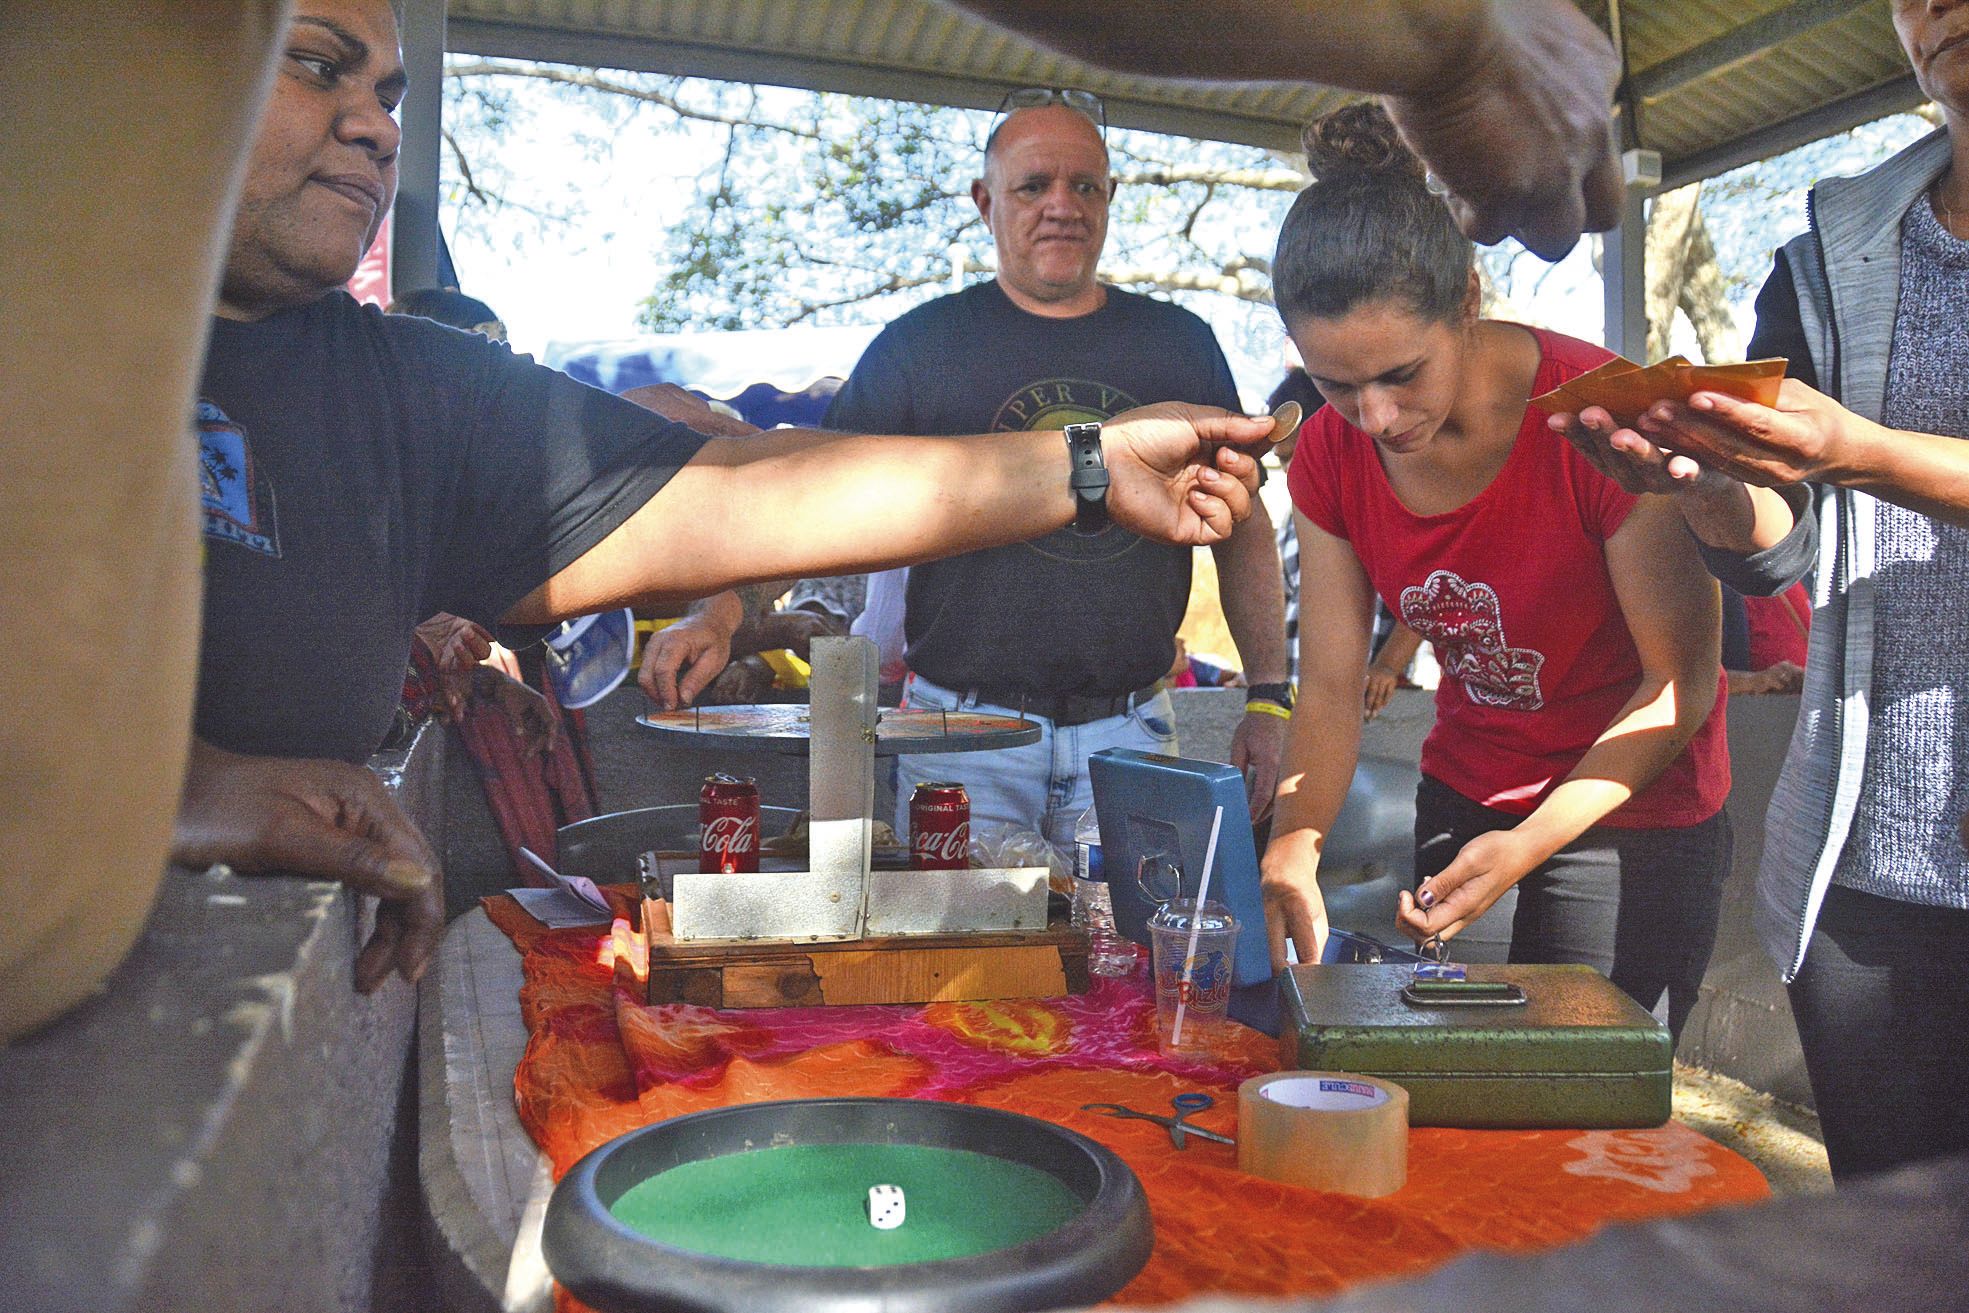 En marge des paris sur les courses, nombreux sont ceux à avoir misé quelques pièces sur la roulette de l’Association omnisports de Népoui, là pour financer une colonie de vacances en octobre.